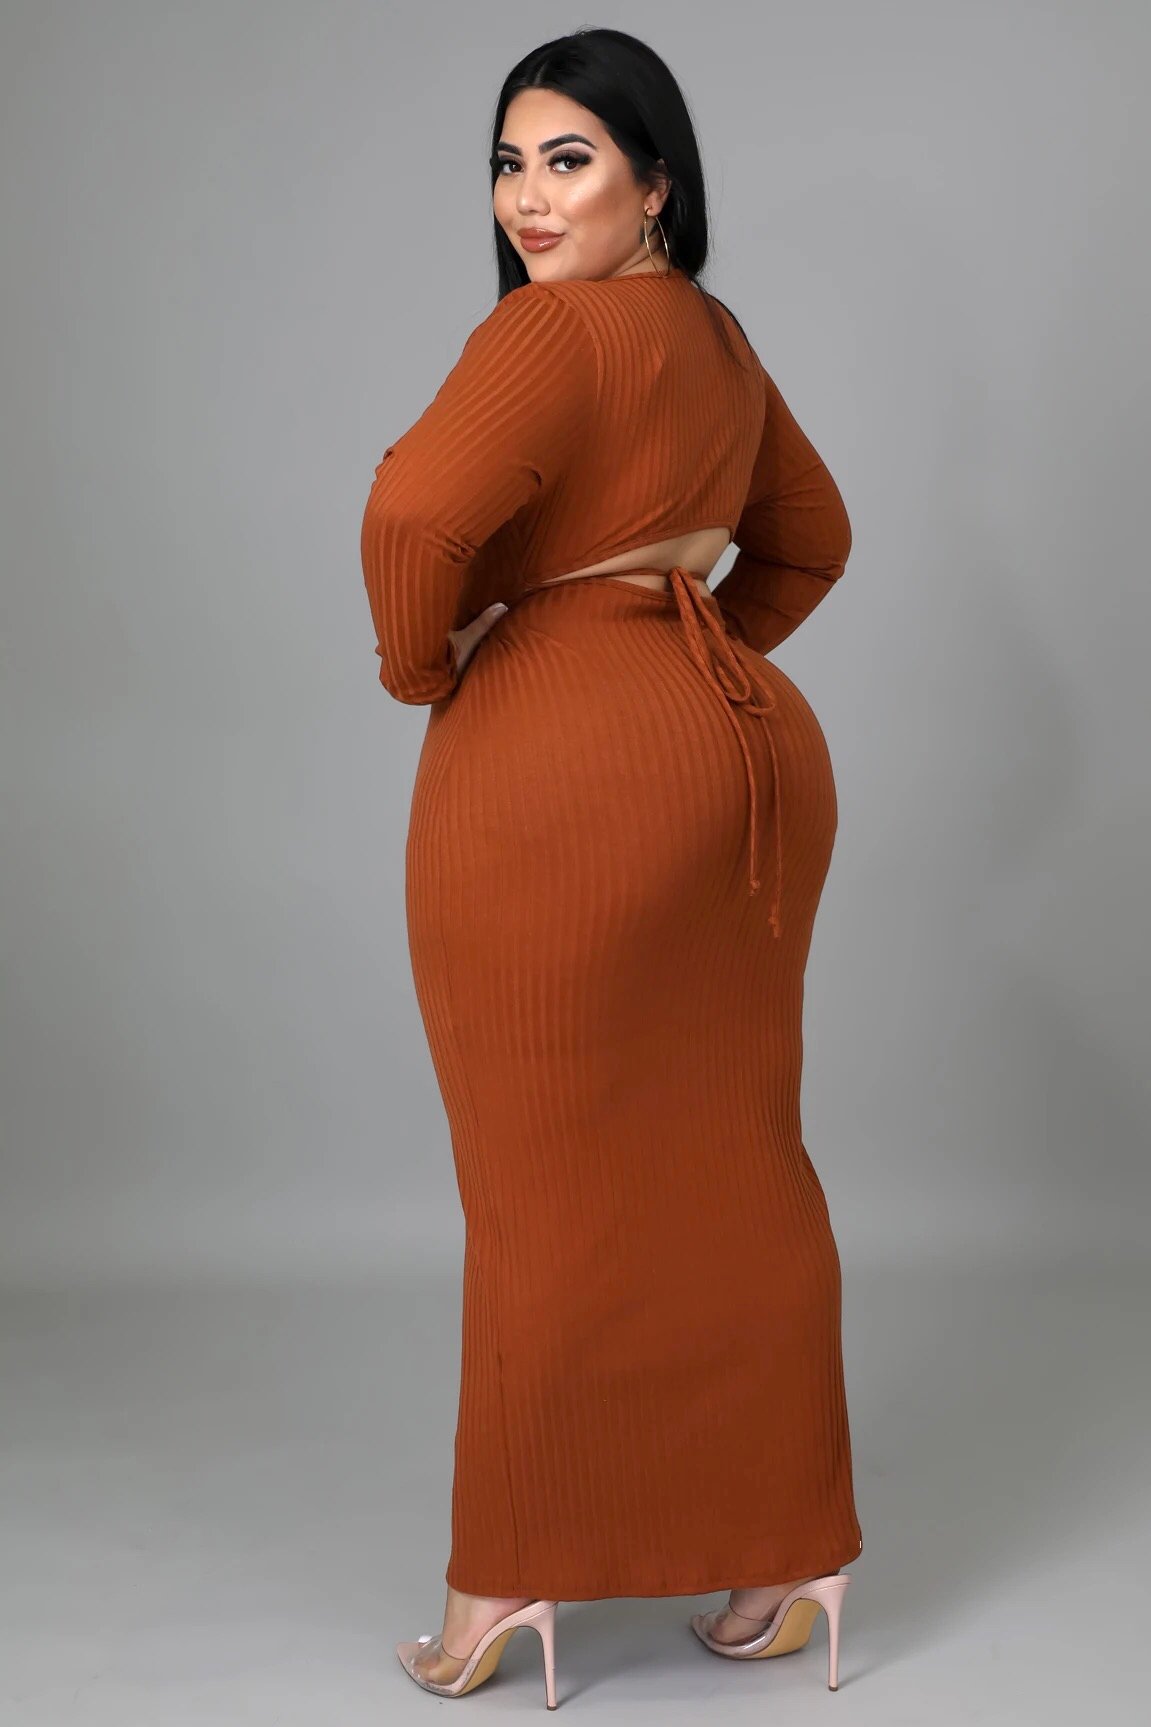 Irreplaceable Cutout Back Midi Dress Cognac Brown (Curvy) - Ali’s Couture 